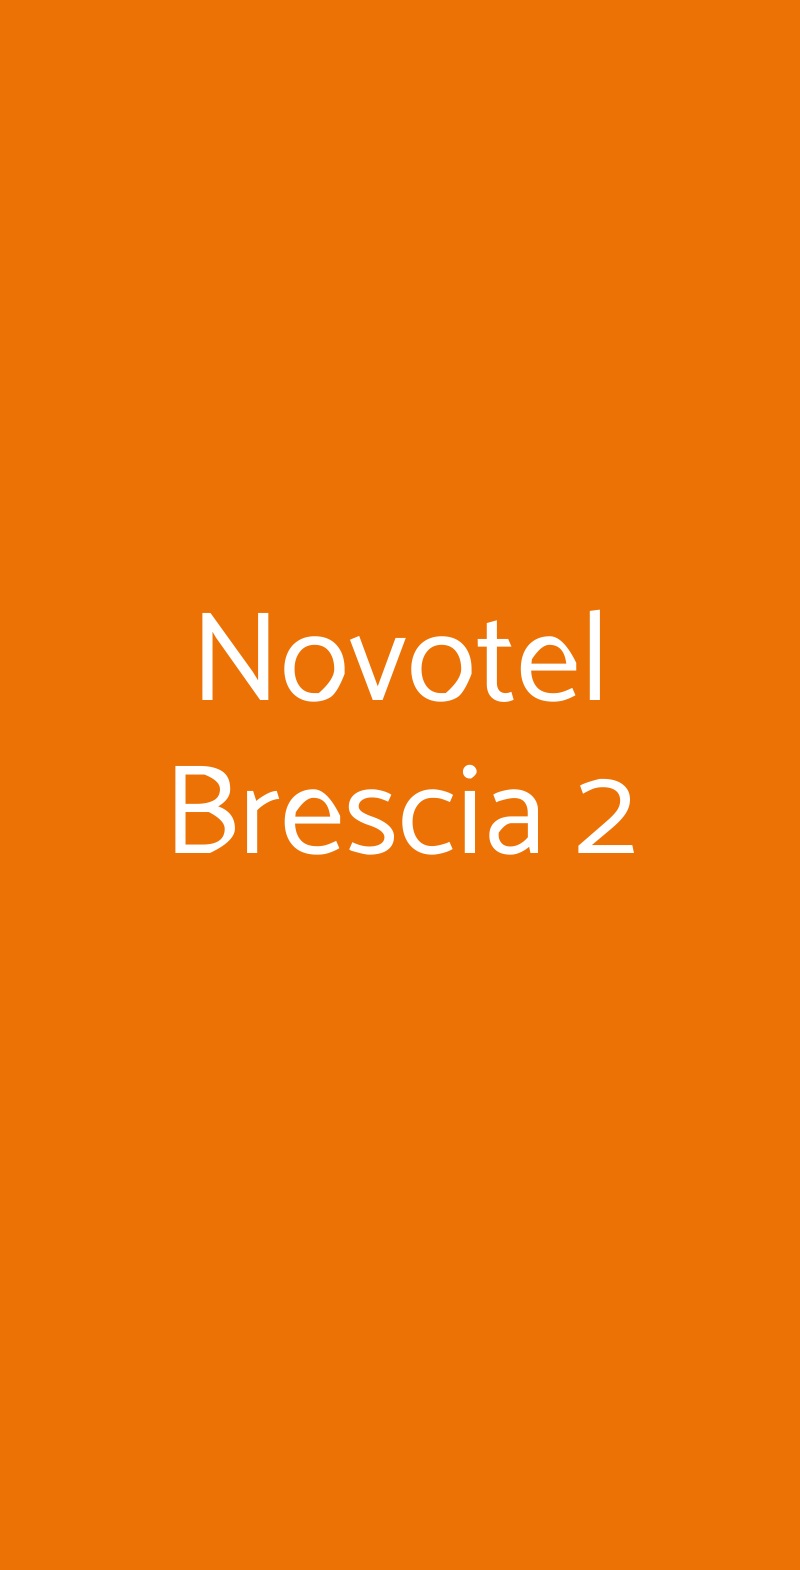 Novotel Brescia 2 Brescia menù 1 pagina